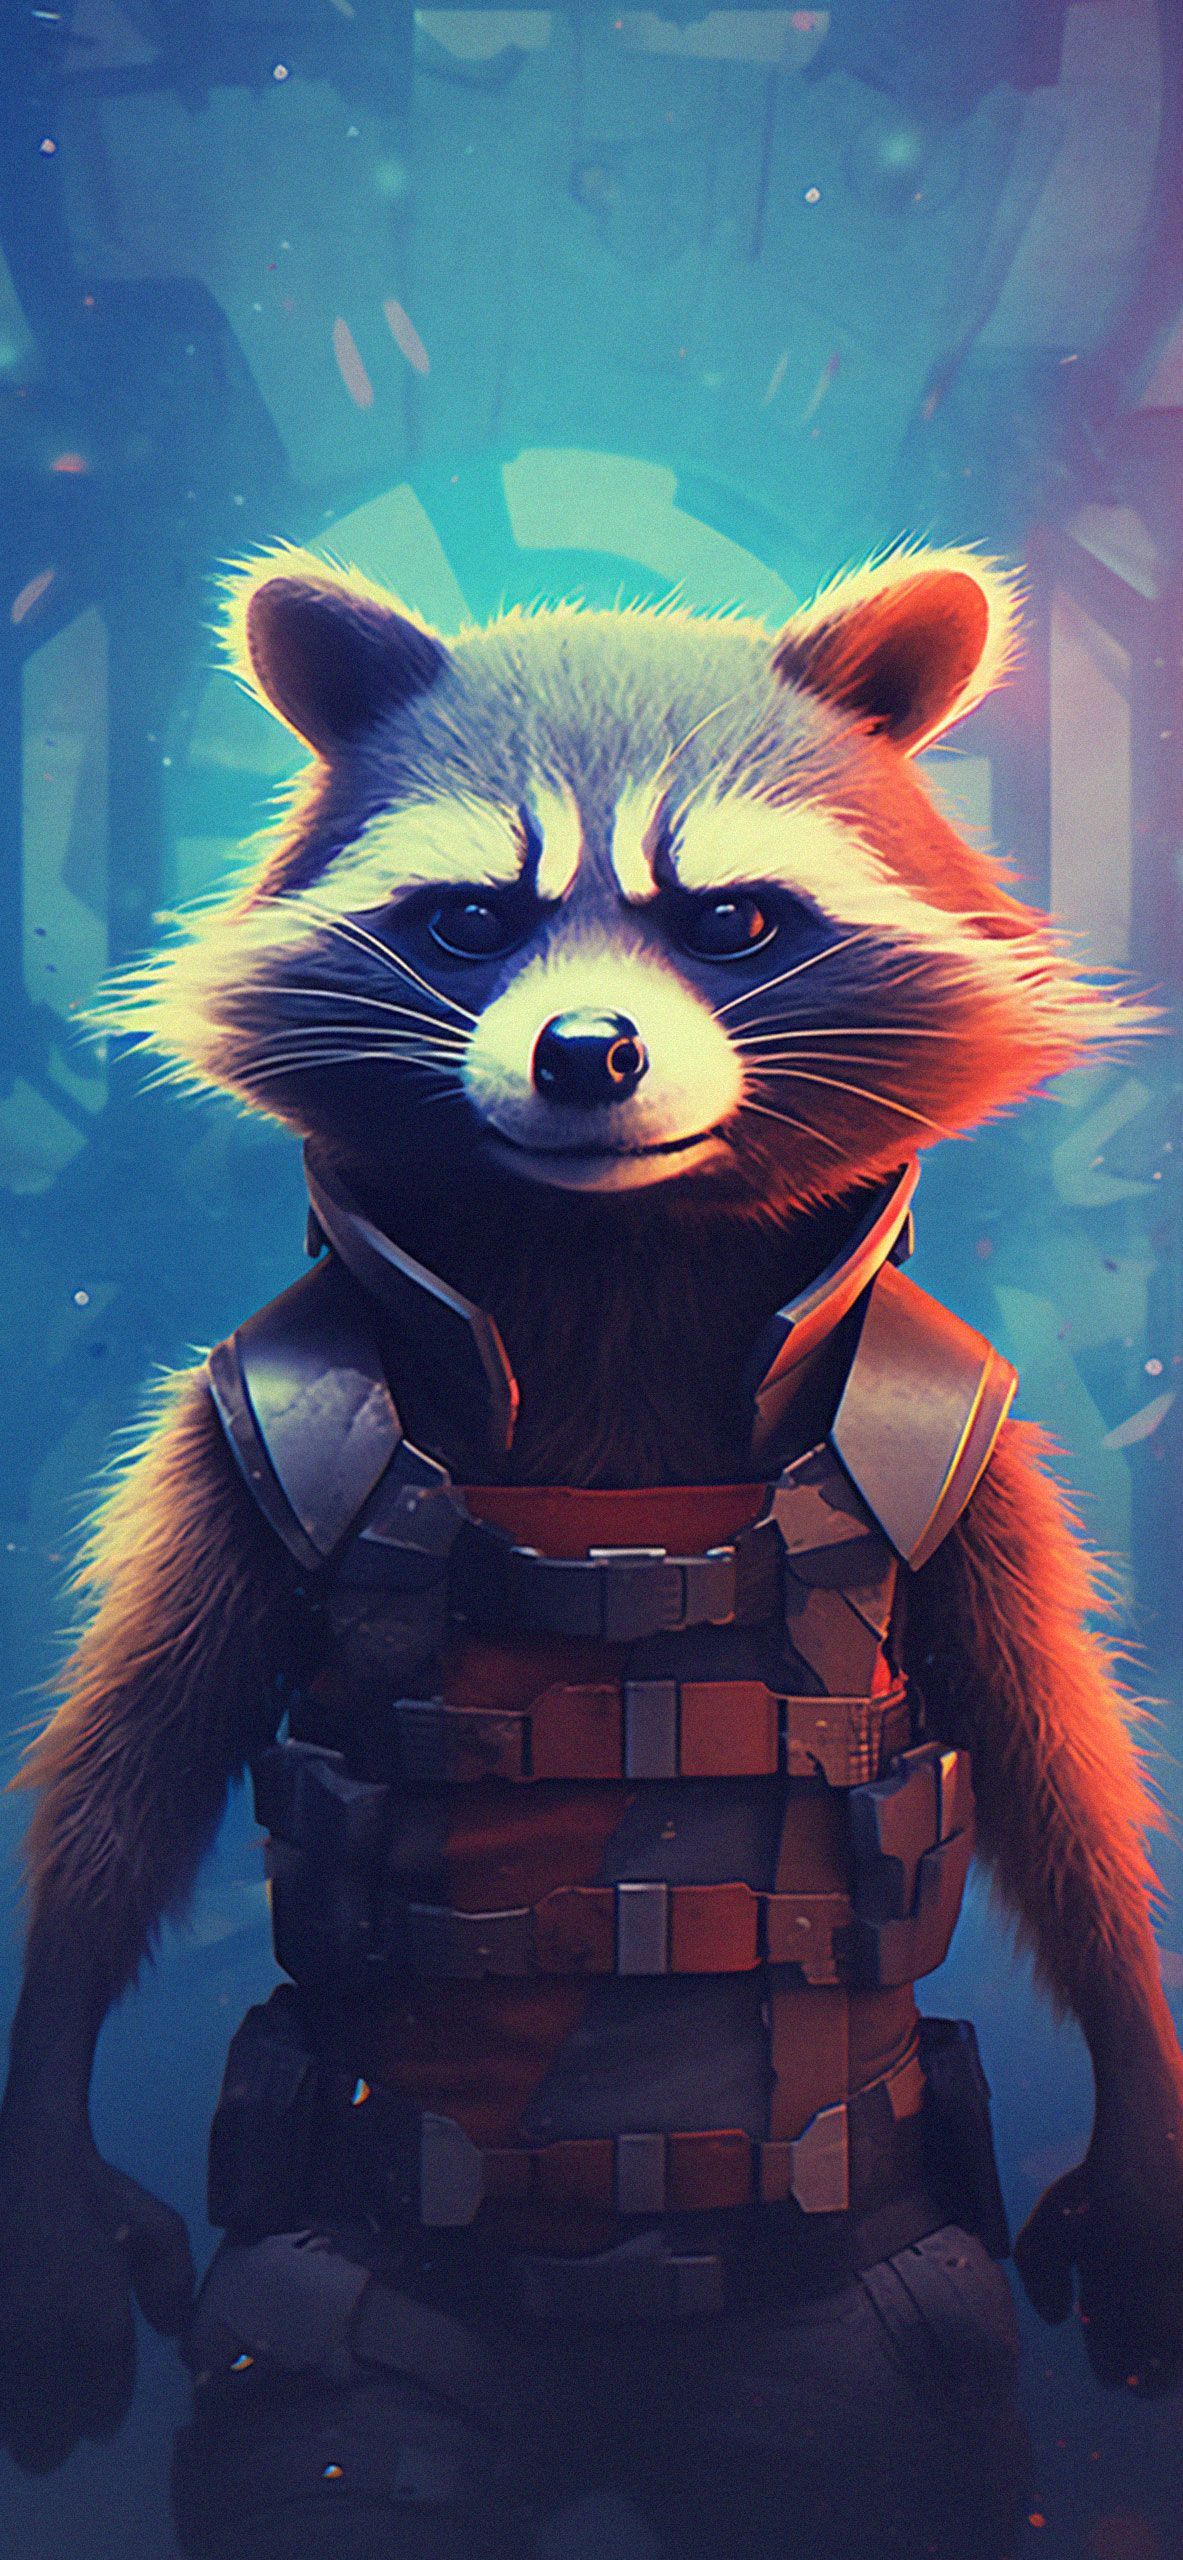 Rocket Raccoon Art Wallpaper Marvel Wallpaper for iPhone